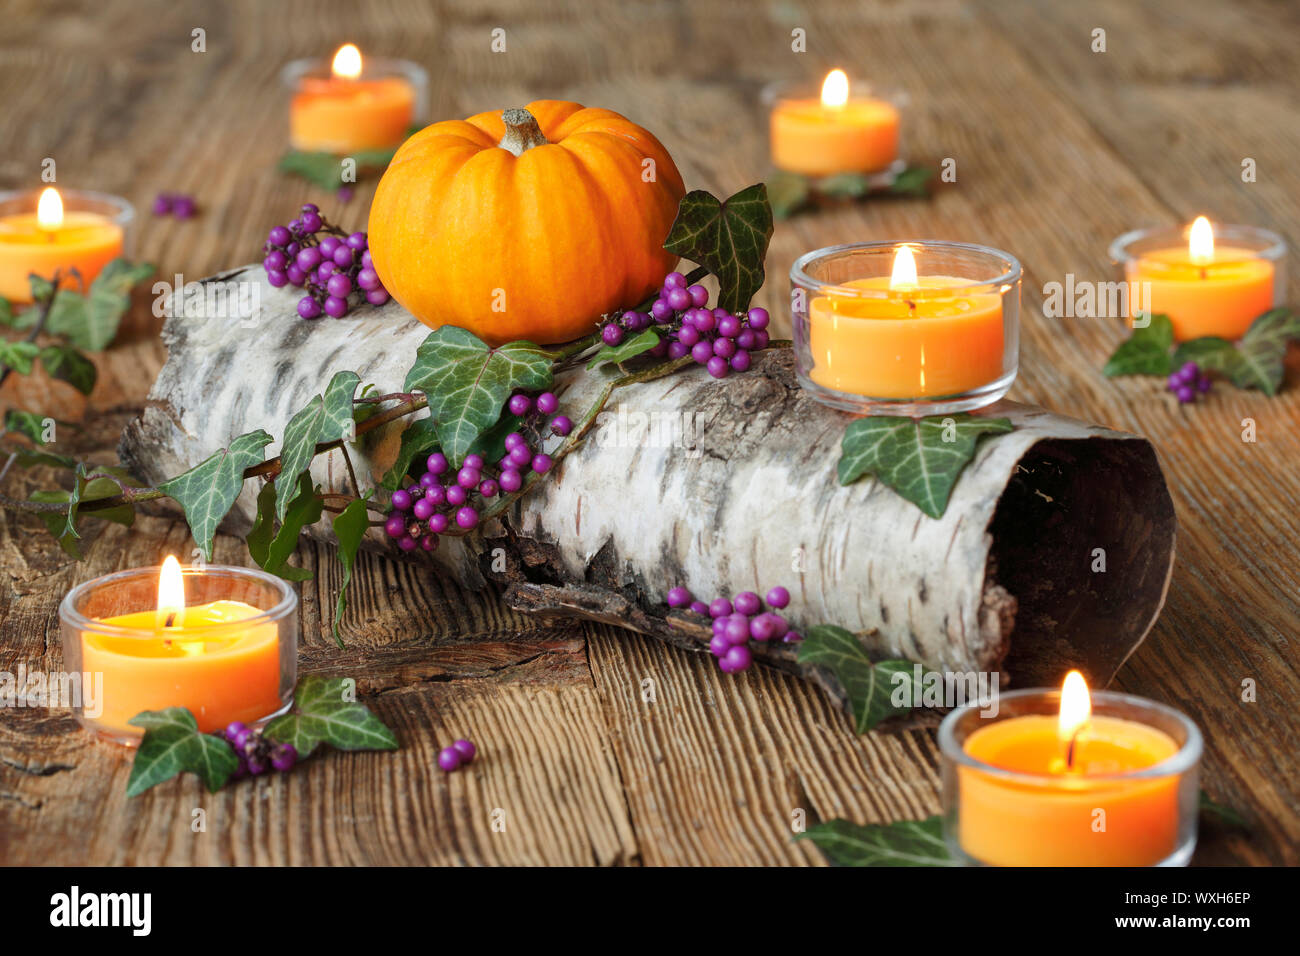 Herbst Dekoration mit brennenden Kerzen, Efeu, eine kleine Kürbis und  violetten Beeren auf einem Birkenstamm. Schweiz Stockfotografie - Alamy